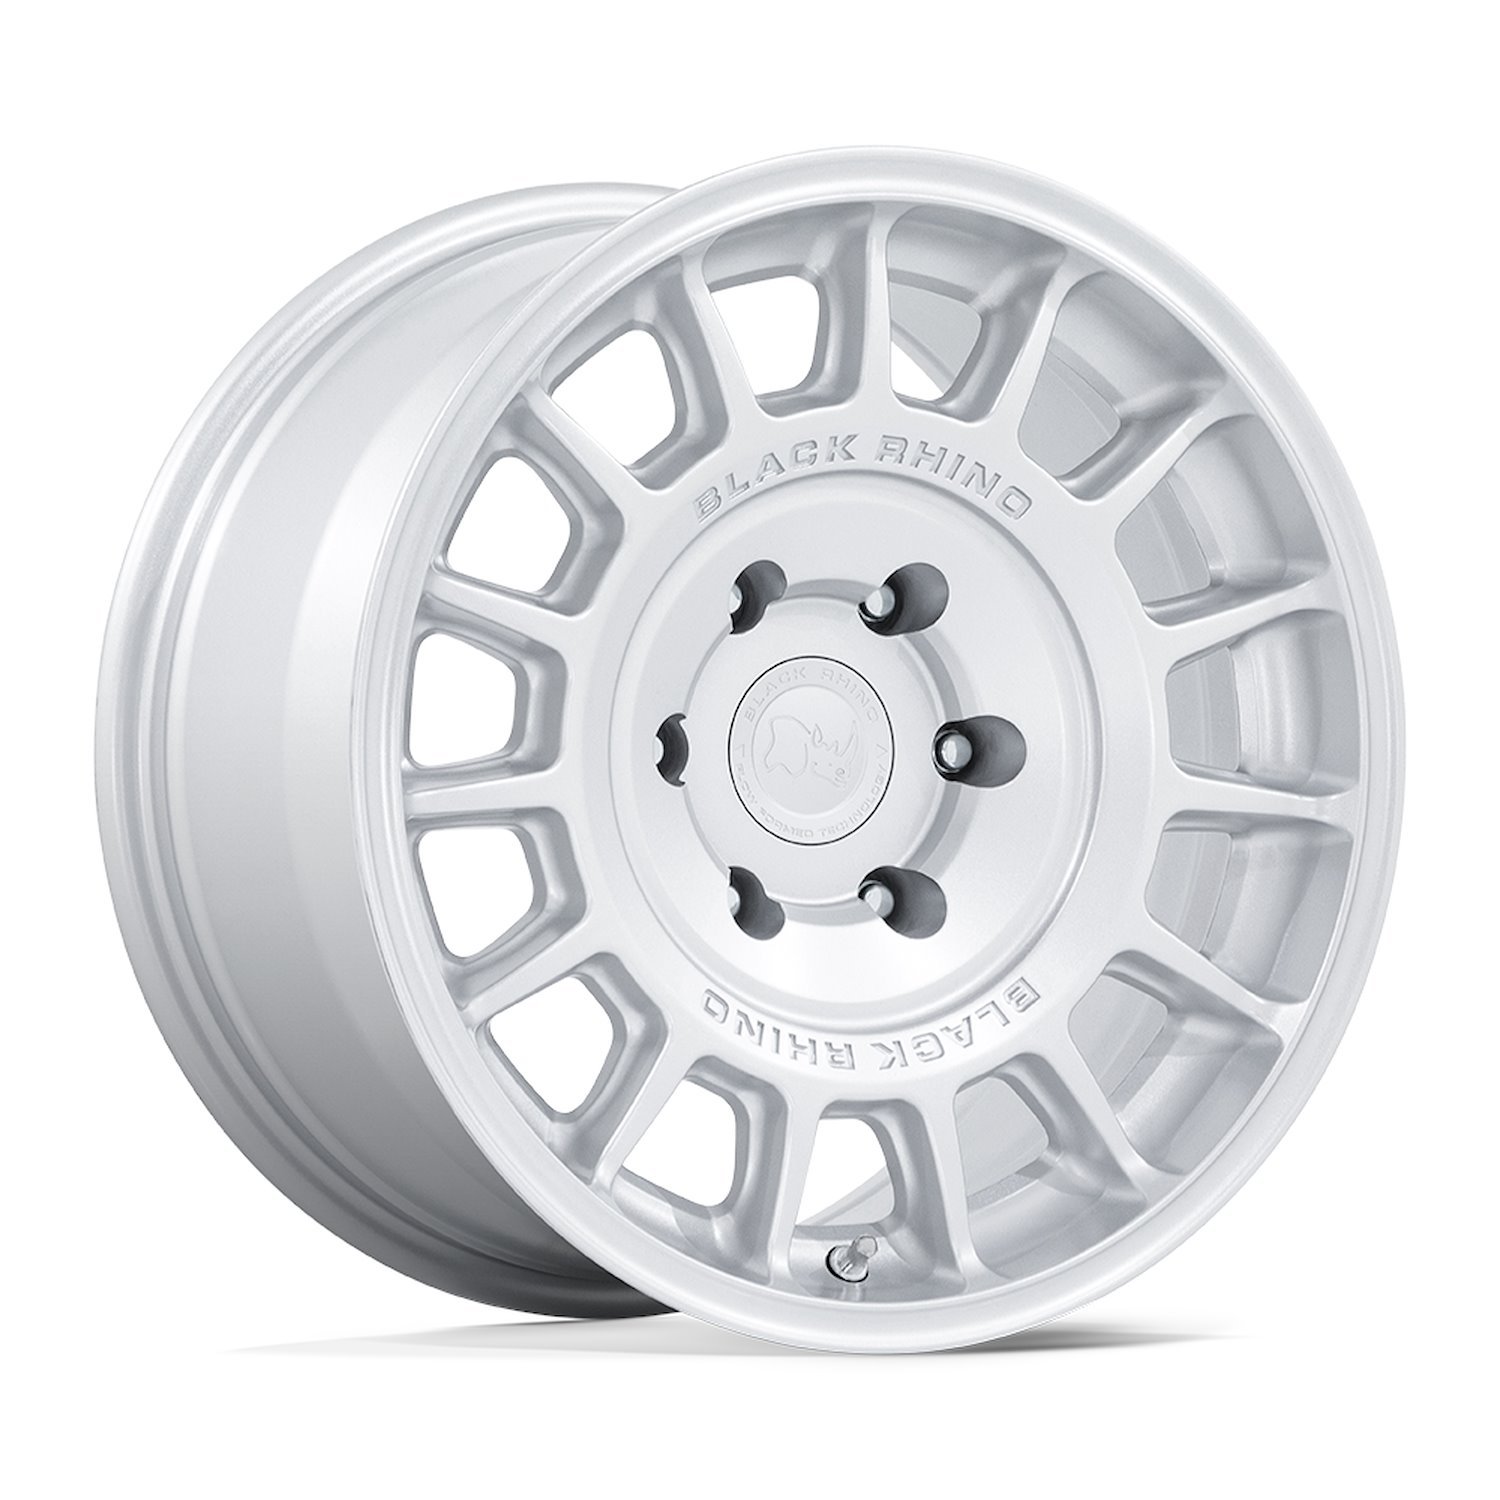 BR015SX17855P25 BR015 VOLL Wheel [Size: 17" x 8.50"] Hyper Silver